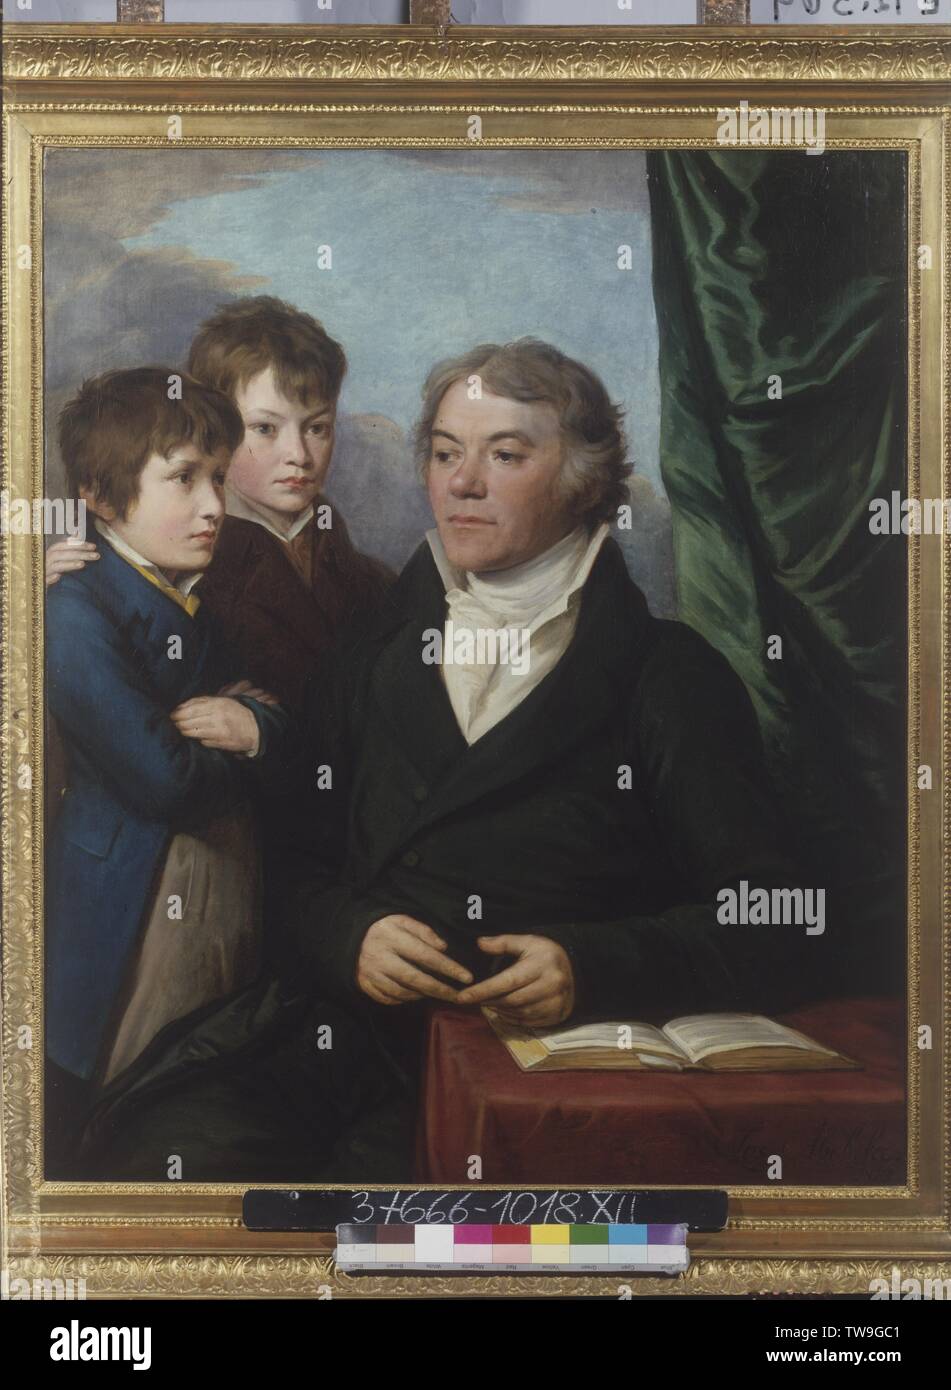 Abel, Joseph, photo d'un homme assis, huile sur toile. Peinture de Joseph Abel. signé et daté 1816, Additional-Rights Clearance-Info-Not-Available- Banque D'Images